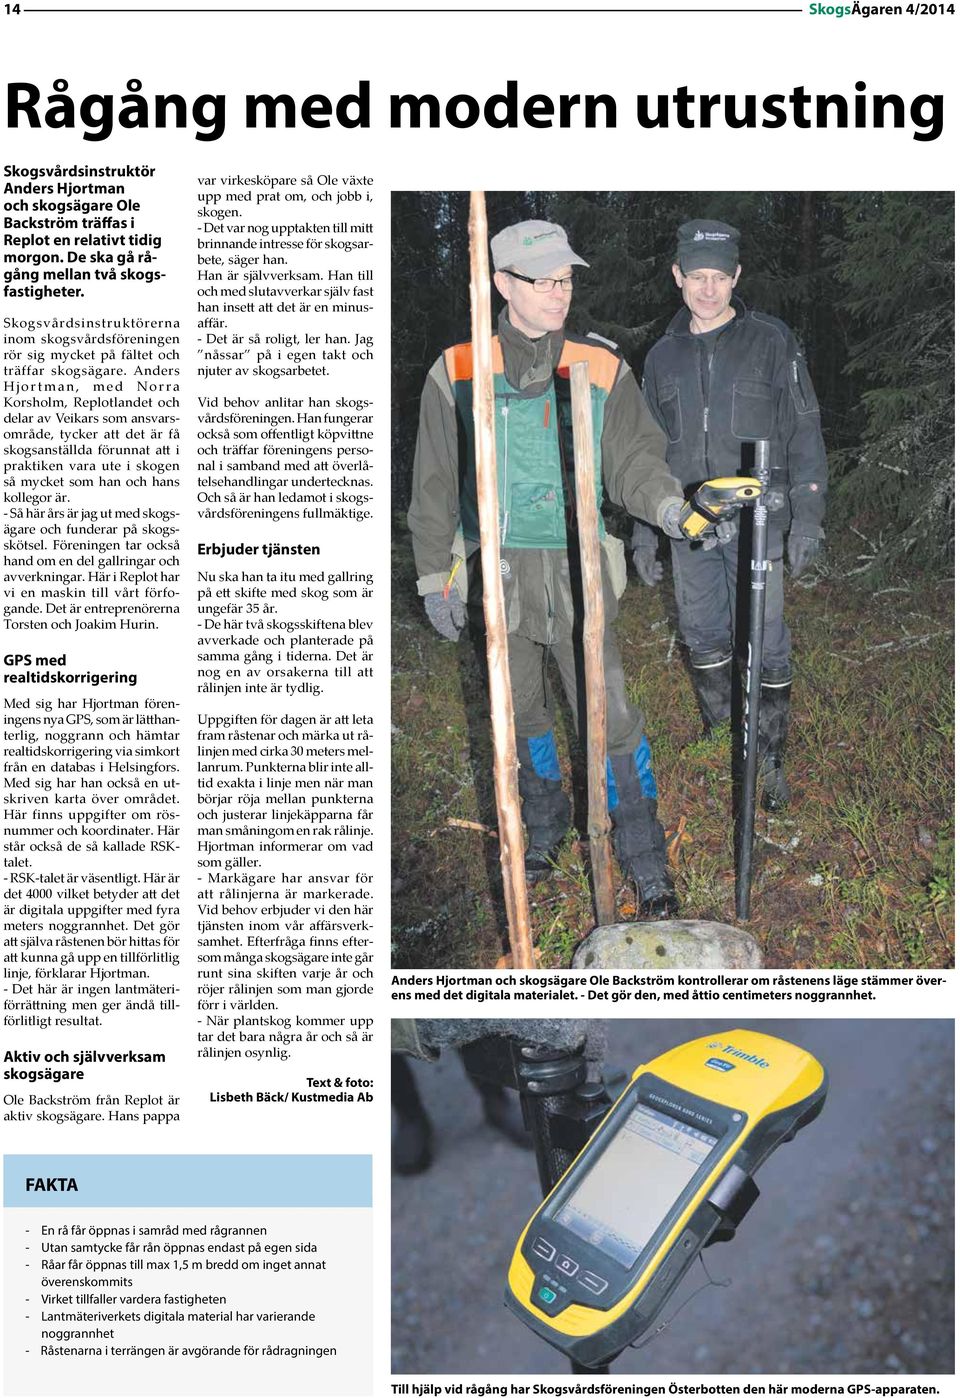 Anders Hjortman, med Norra Korsholm, Replotlandet och delar av Veikars som ansvarsområde, tycker att det är få skogsanställda förunnat att i praktiken vara ute i skogen så mycket som han och hans